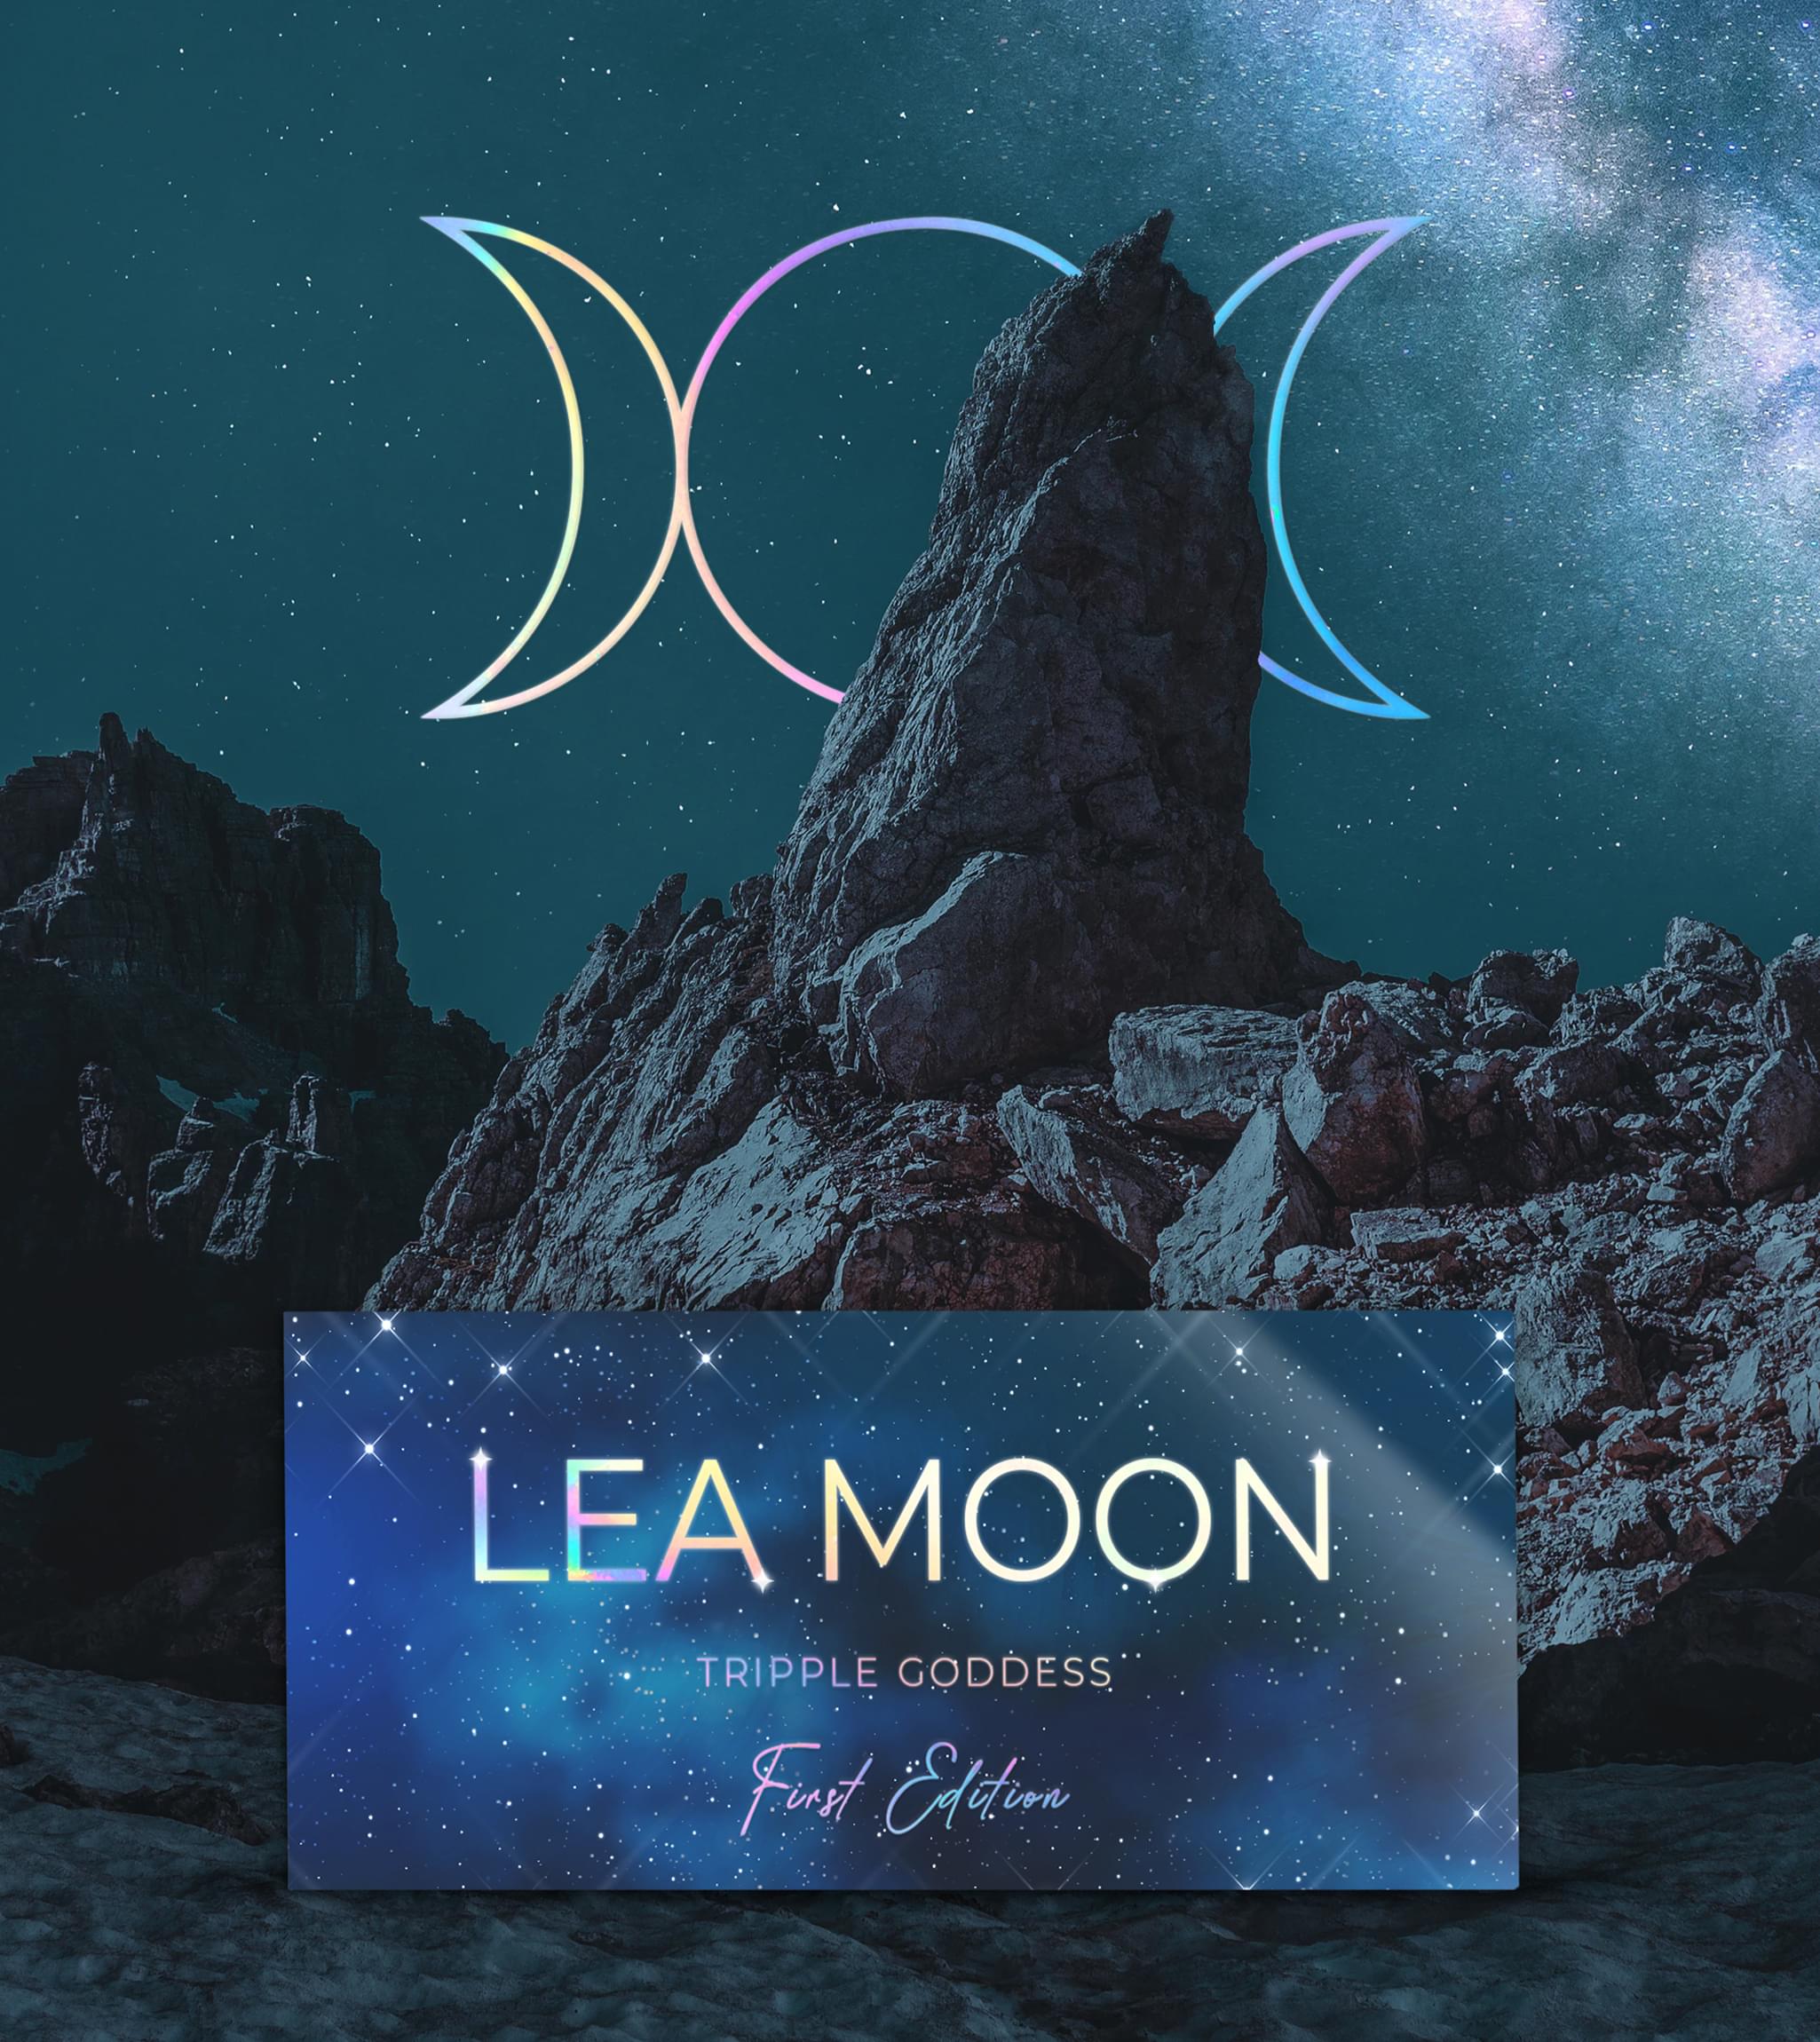 Lea Moon Packaging